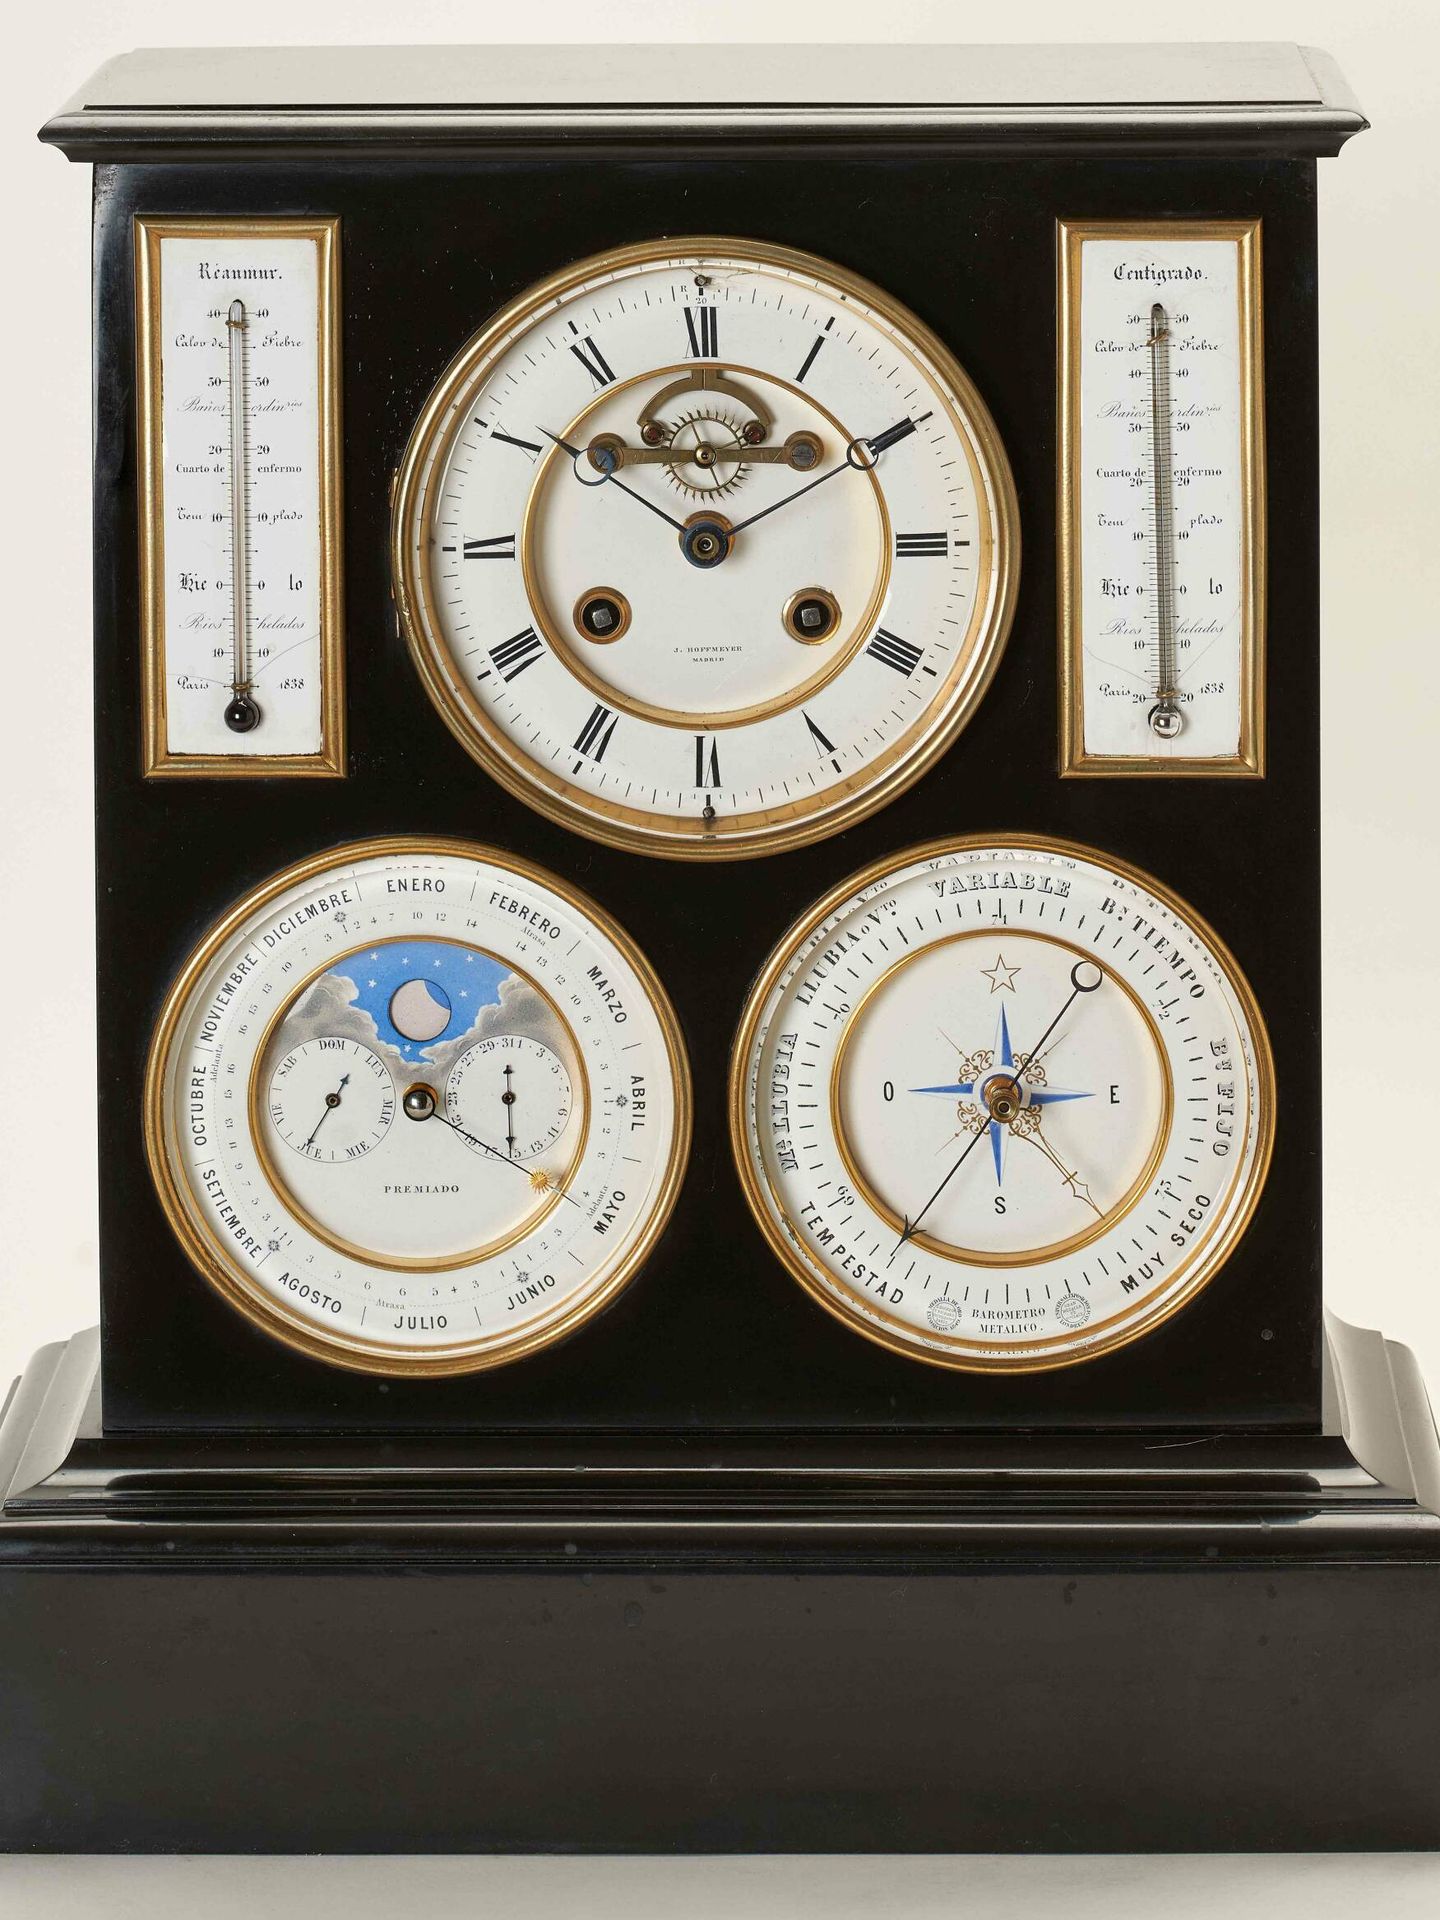 Reloj de sobremesa realizado por José de Hoffmeyer alrededor de 1850. COLECCIÓN BANCO DE ESPAÑA